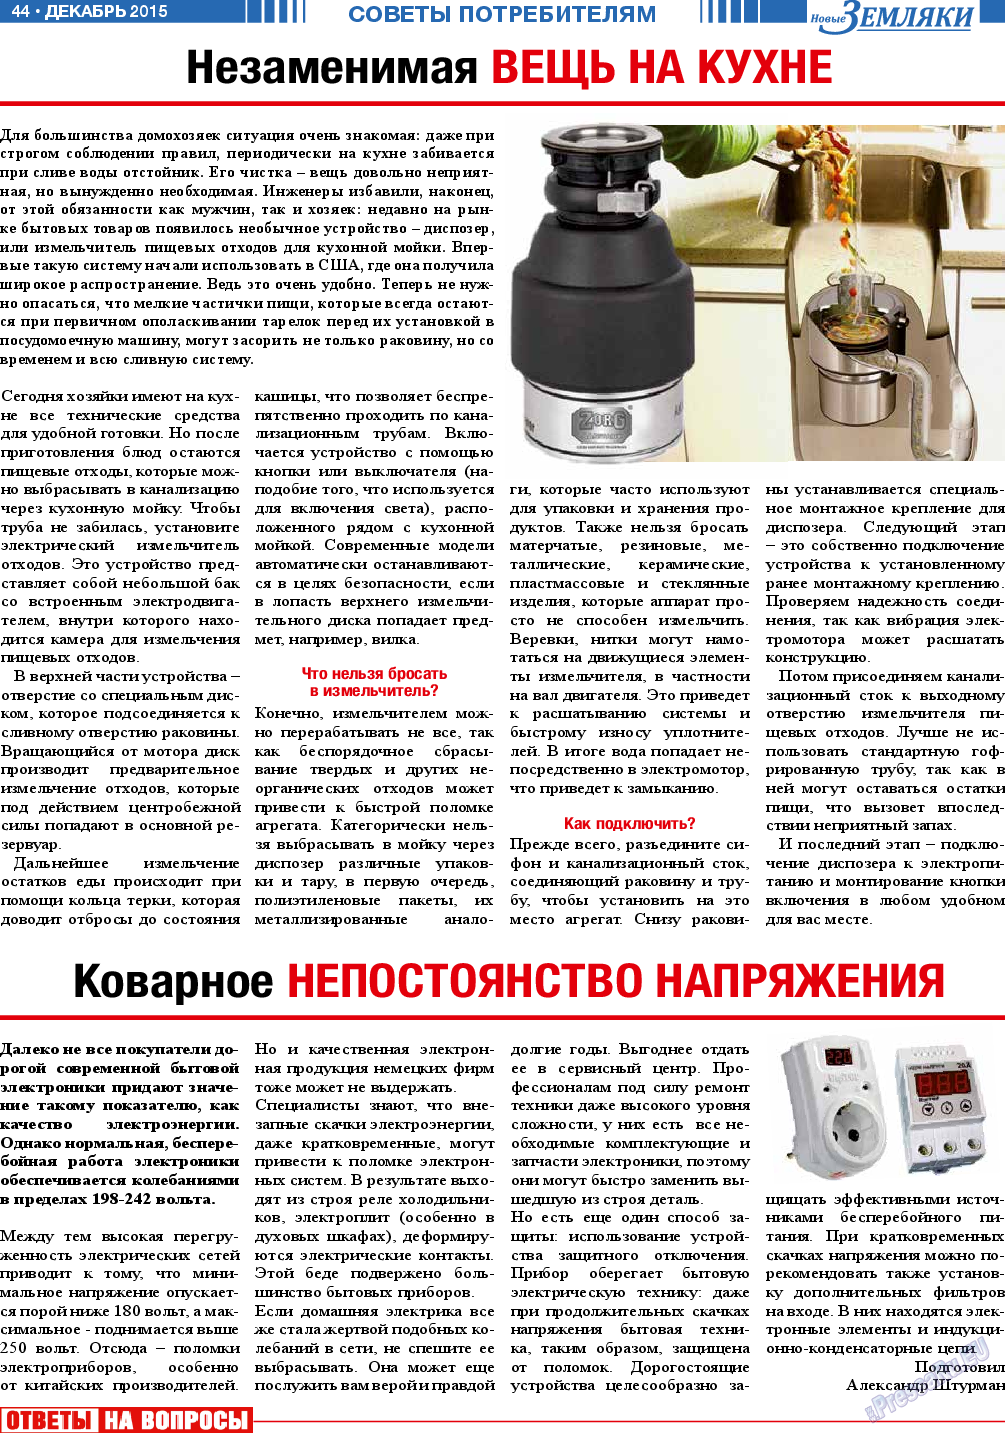 Новые Земляки (газета). 2015 год, номер 12, стр. 44